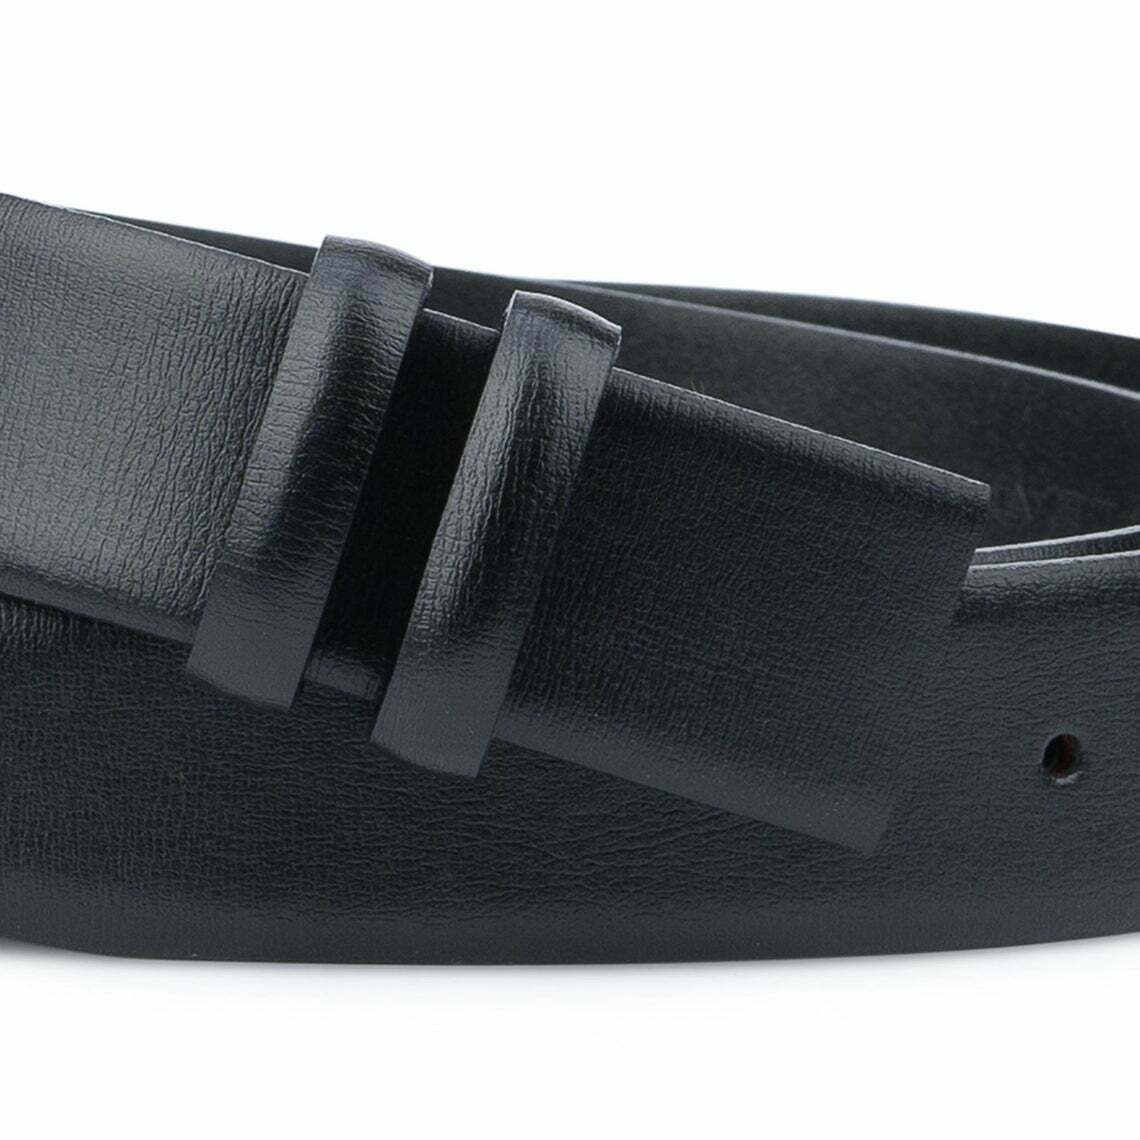 Dunhill - Leather Belt - Mens - Black